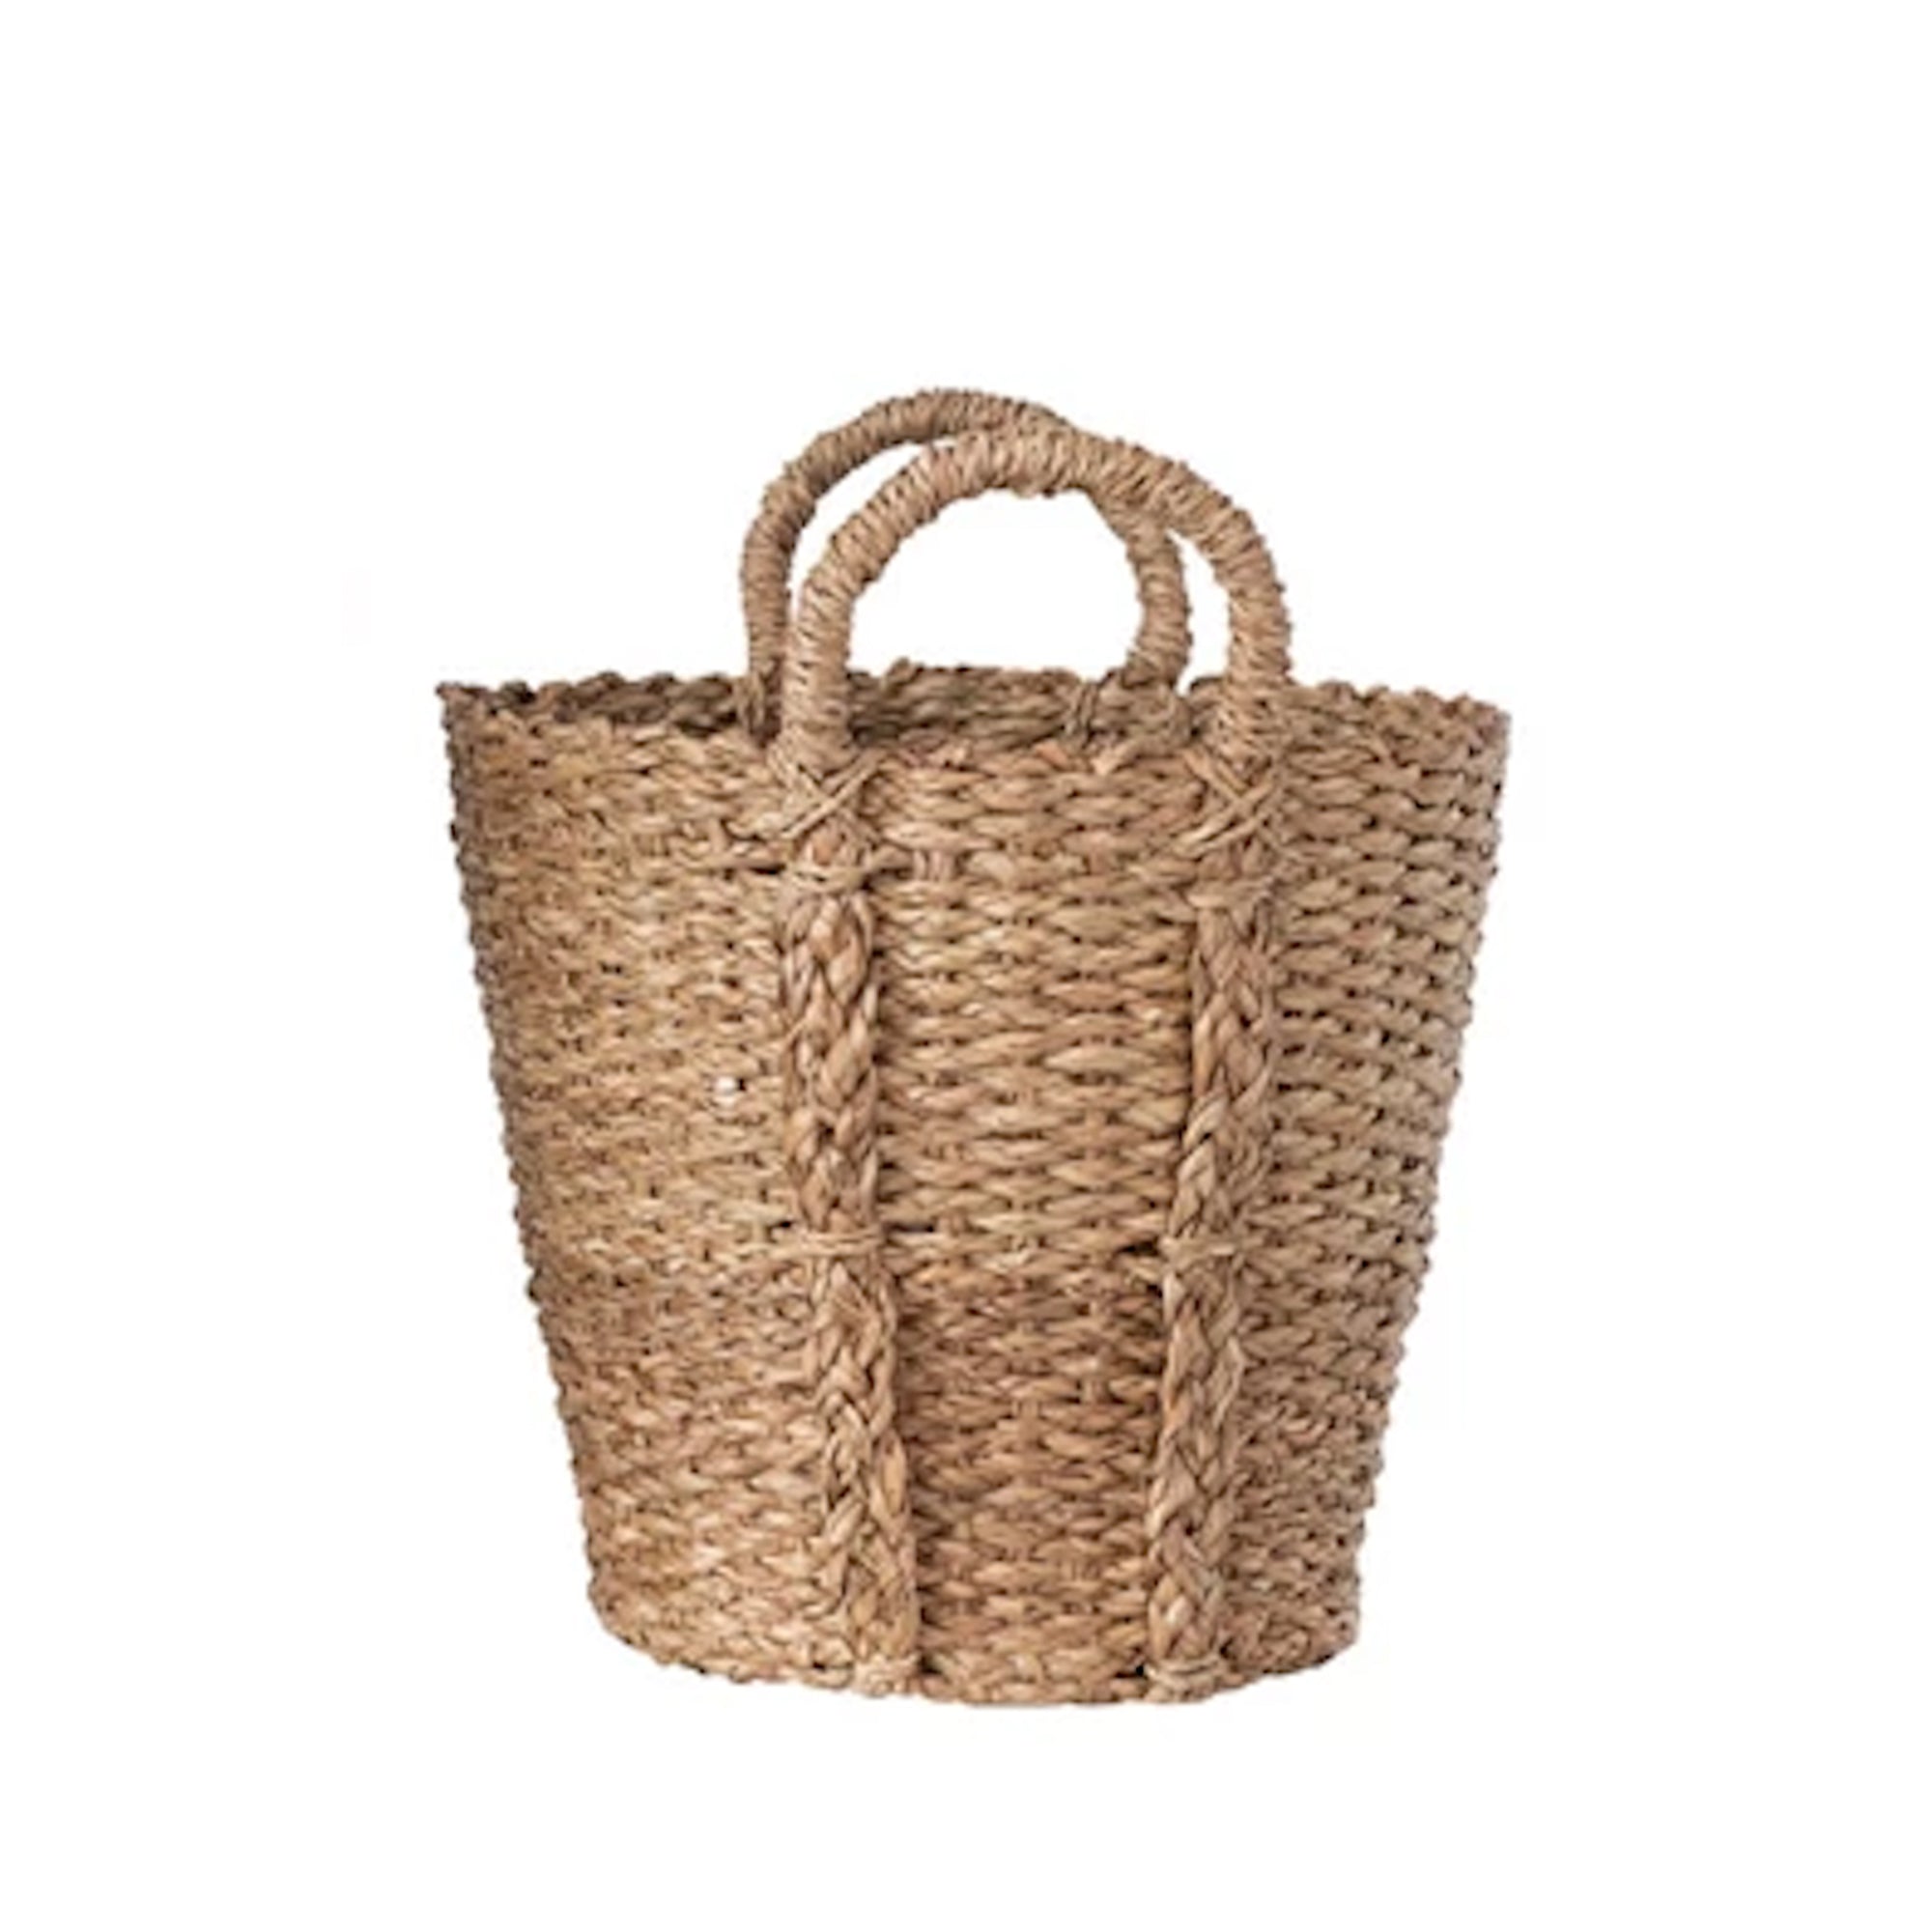 Hand-Woven Bankuan Baskets